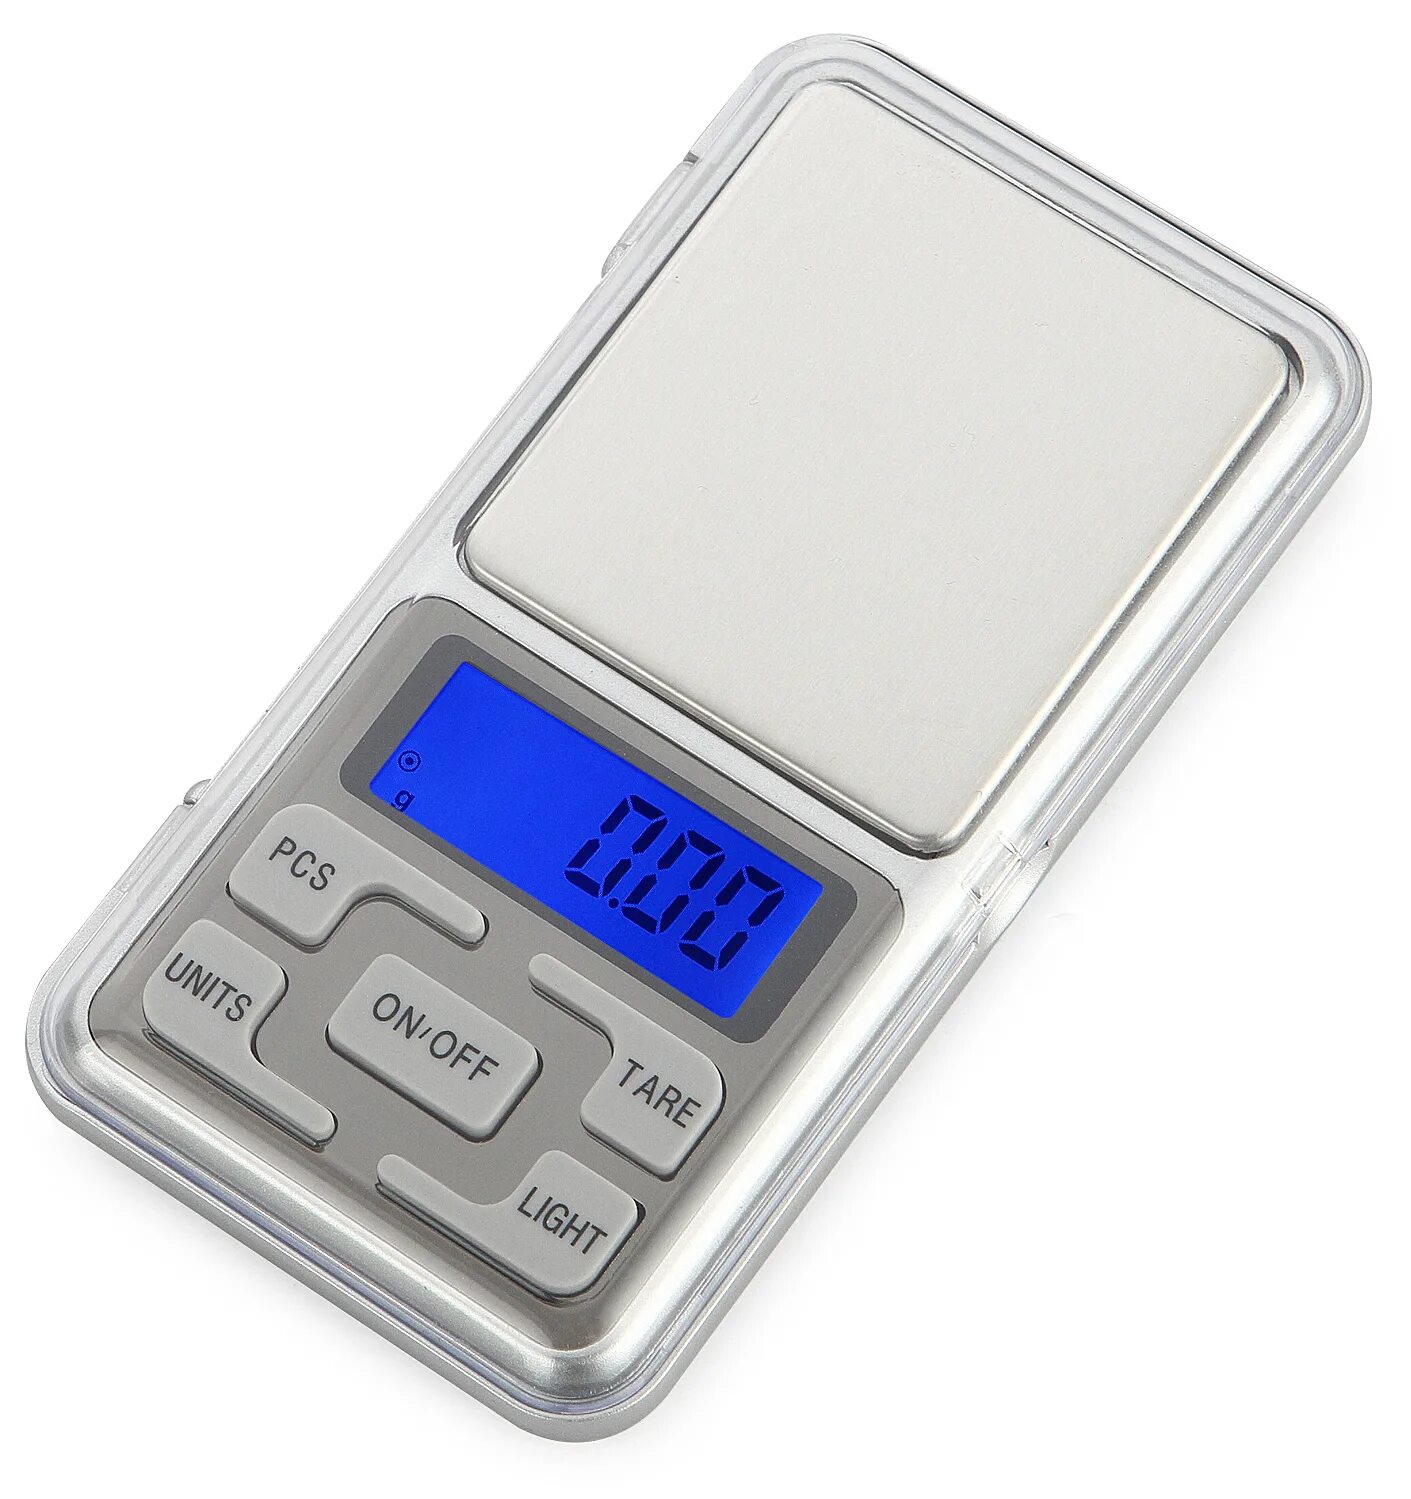 Портативные весы Pocket Scale. 500g 0.1g Digital Pocket Scale Precision Weight Electronic Balance hot. Весы 0.01 гр 100-200 НПВ. Весы электронные карманные Pocket Scale мн-500. Купить мини весы